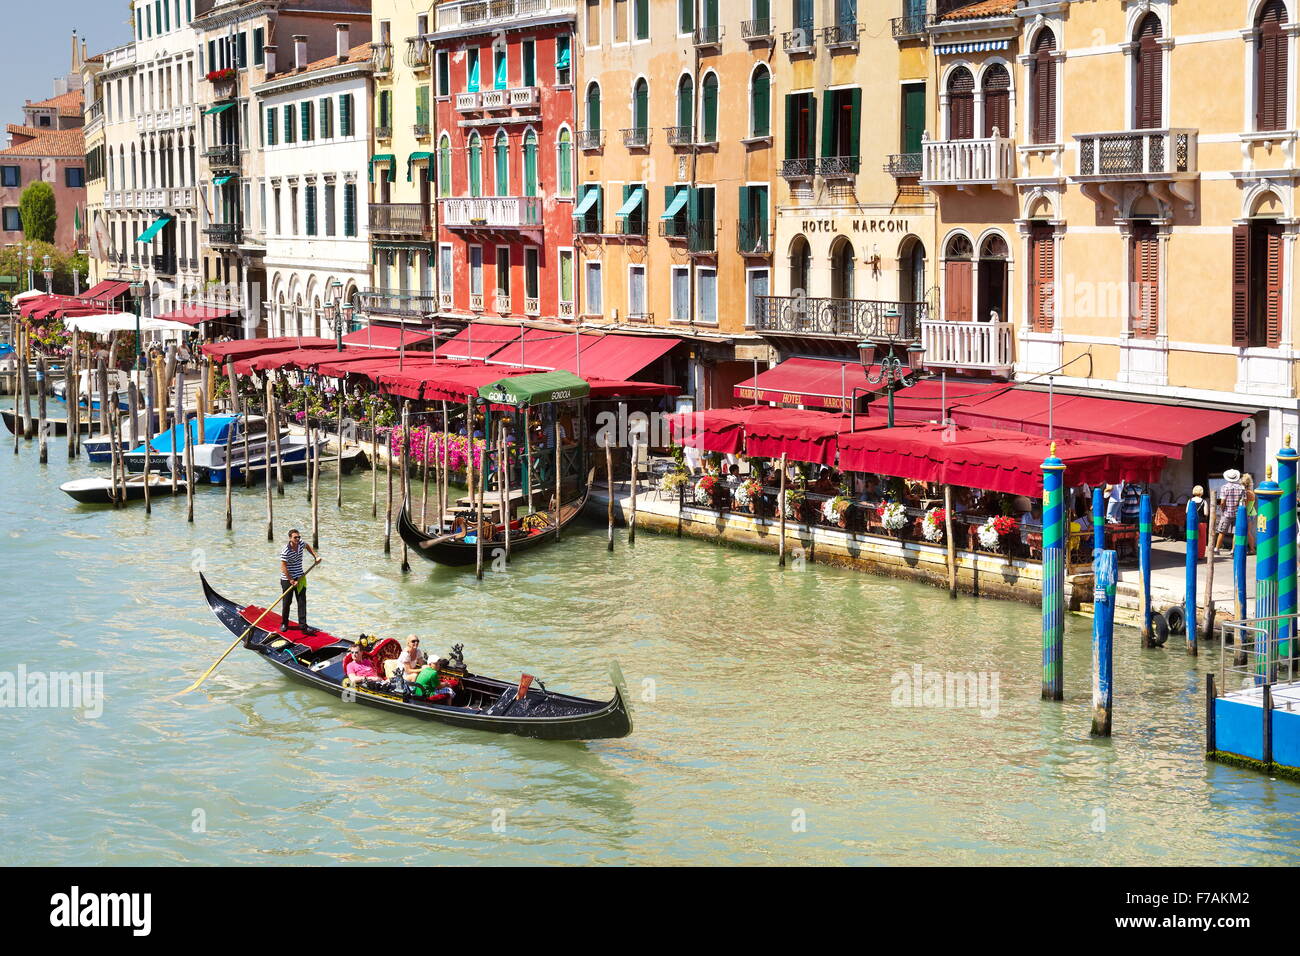 Venedig-Blick von der Rialto Brücke - Gondel mit Touristen auf den Canal Grande, Venedig, Italien Stockfoto